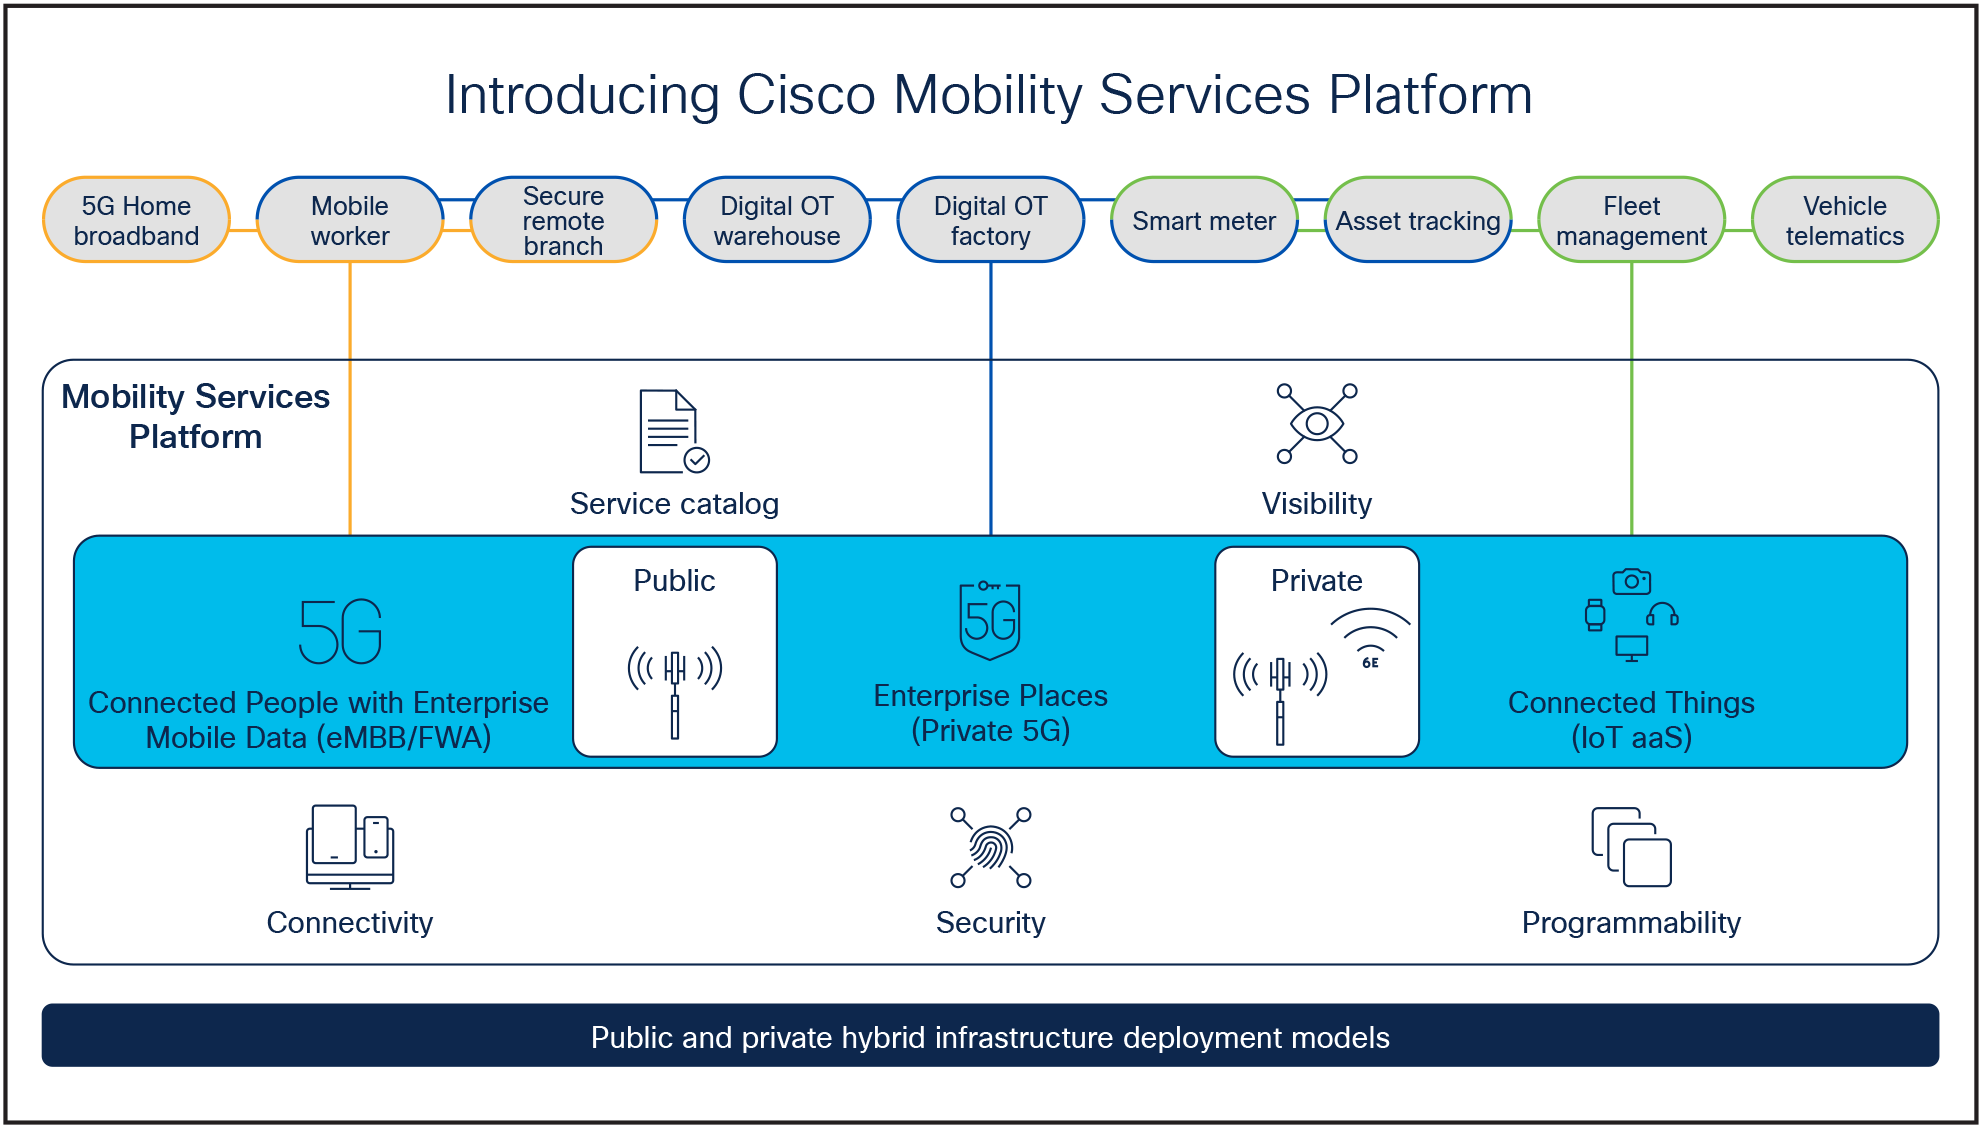 The Cisco Mobility Services Platform